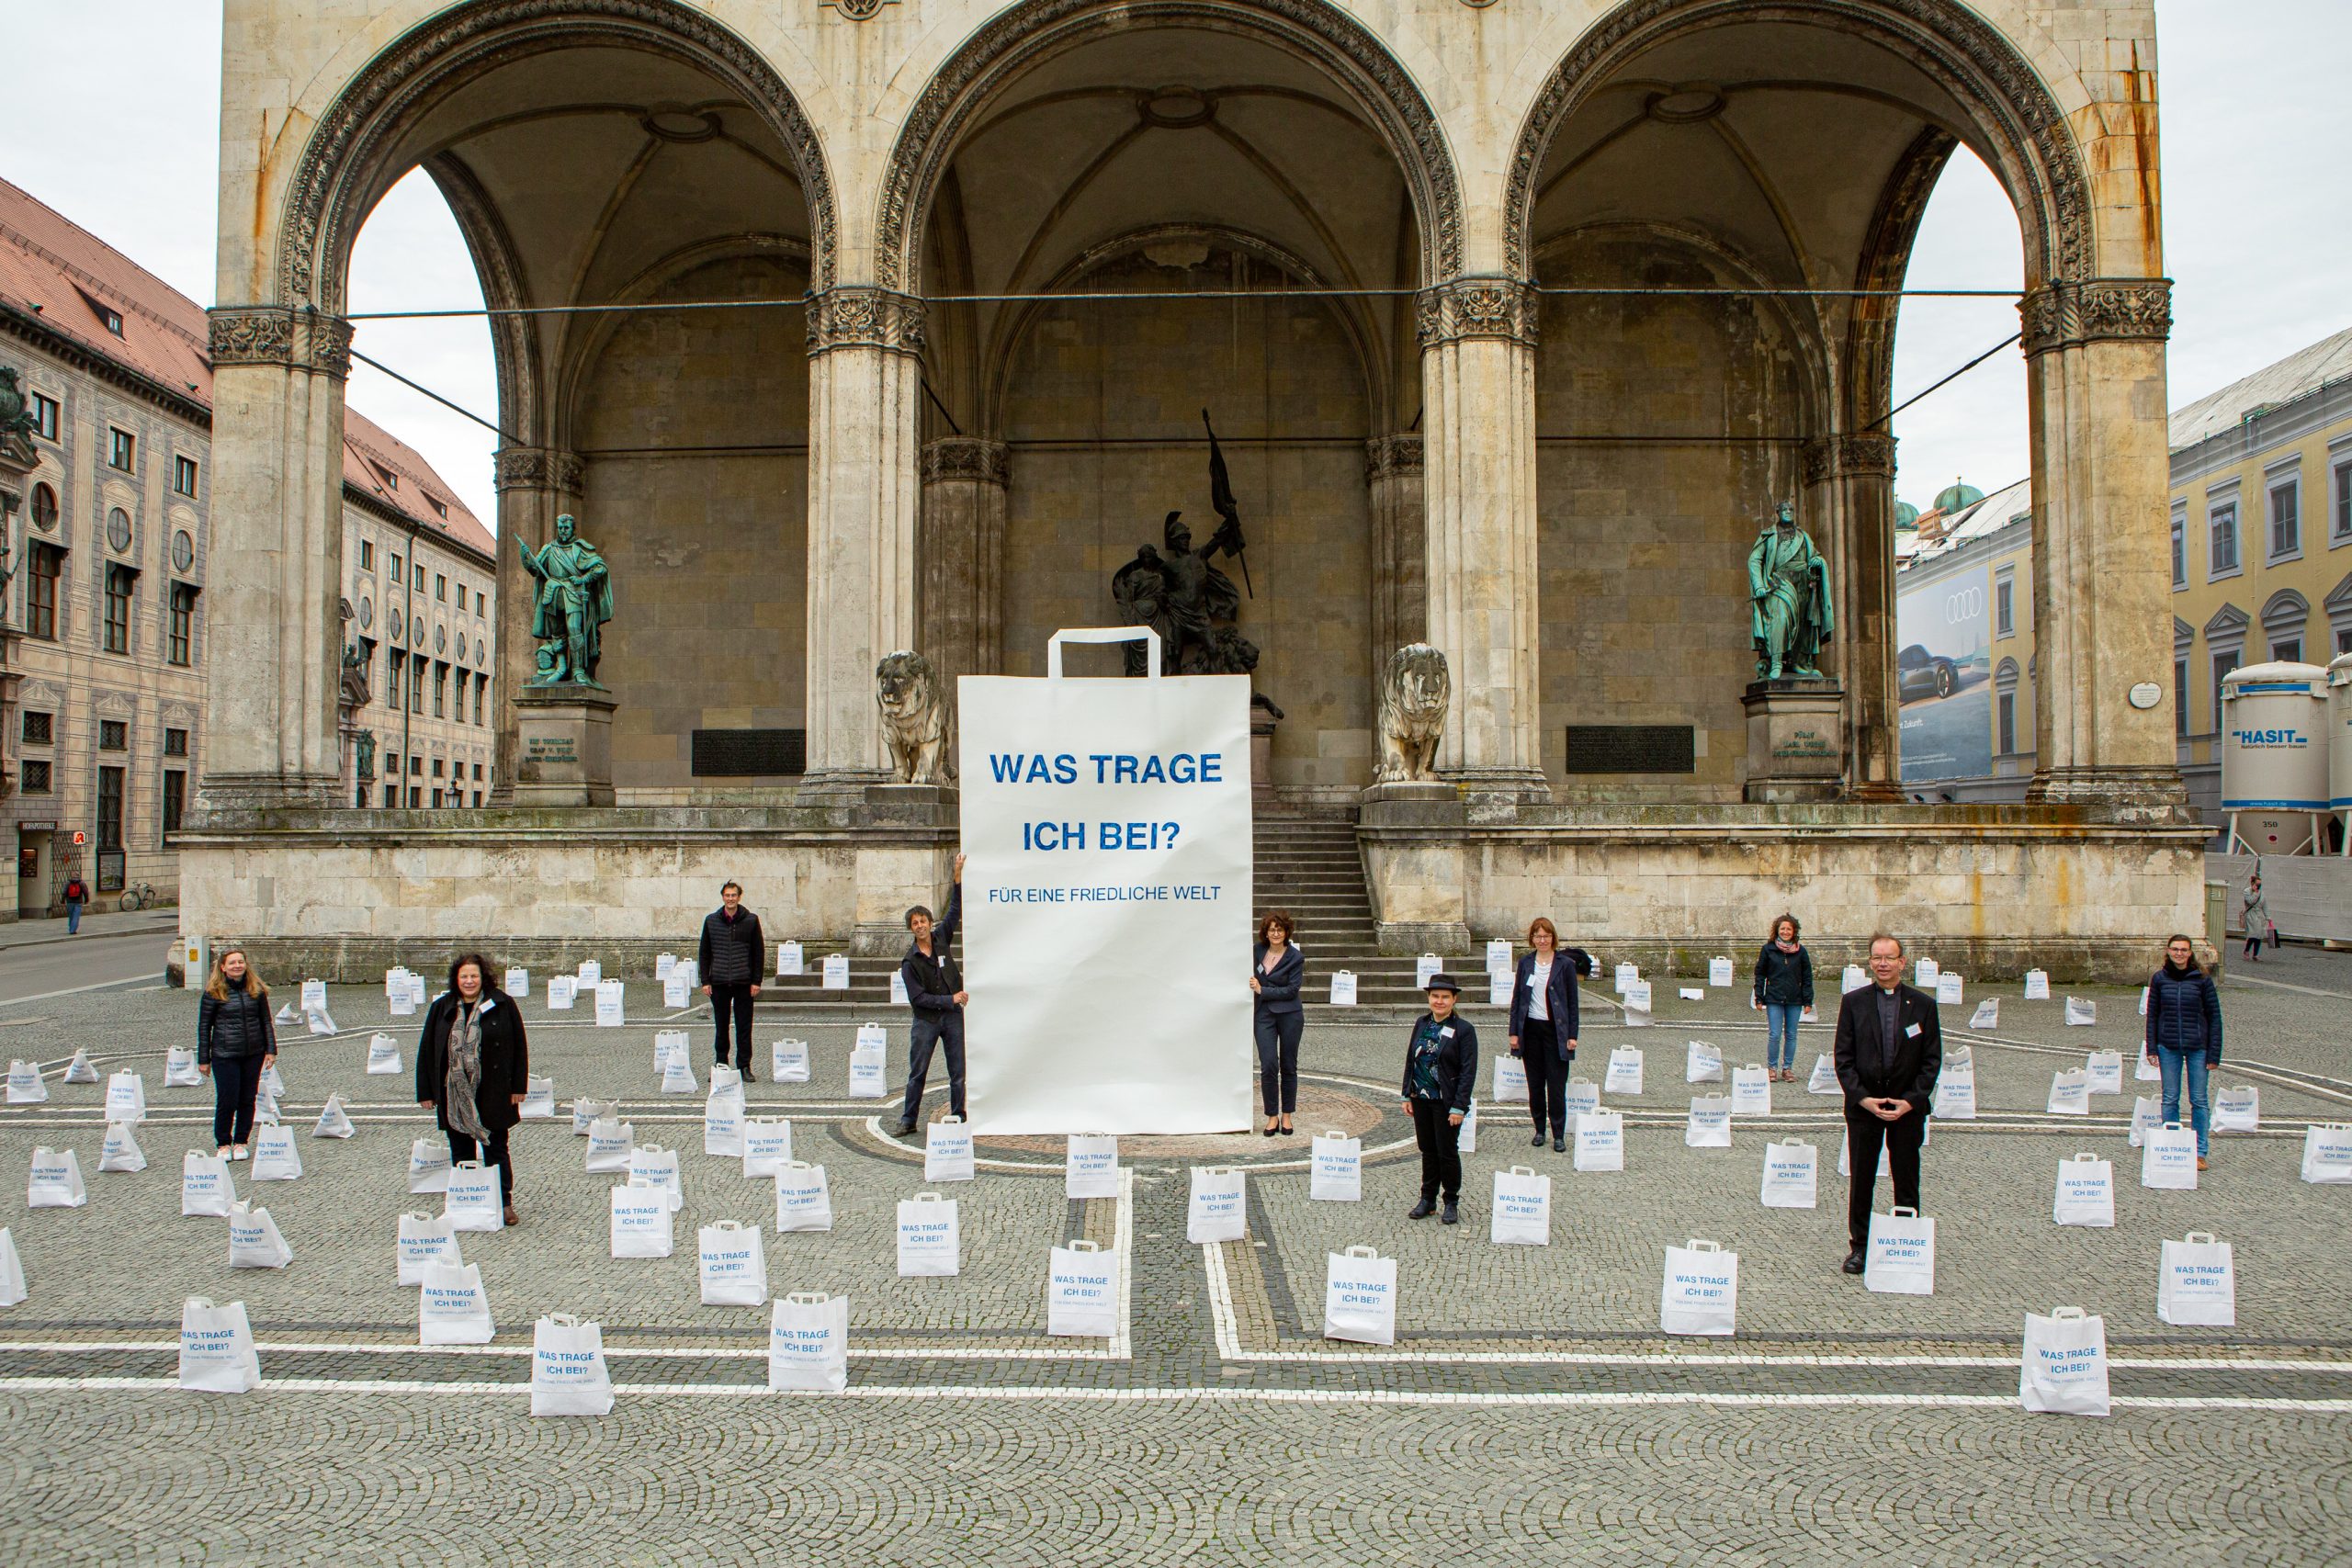 Eine Kunstinstallation aus Papier vor der Feldherrenhalle in München. Menschen stehen in einem Meer aus Papiertüten. In der MItte steht eine dreieinhalb Meter hohe Papiertüte. Alle sind bedruckt mit der Frage Was trage ich bei? Für eine friedliche Welt